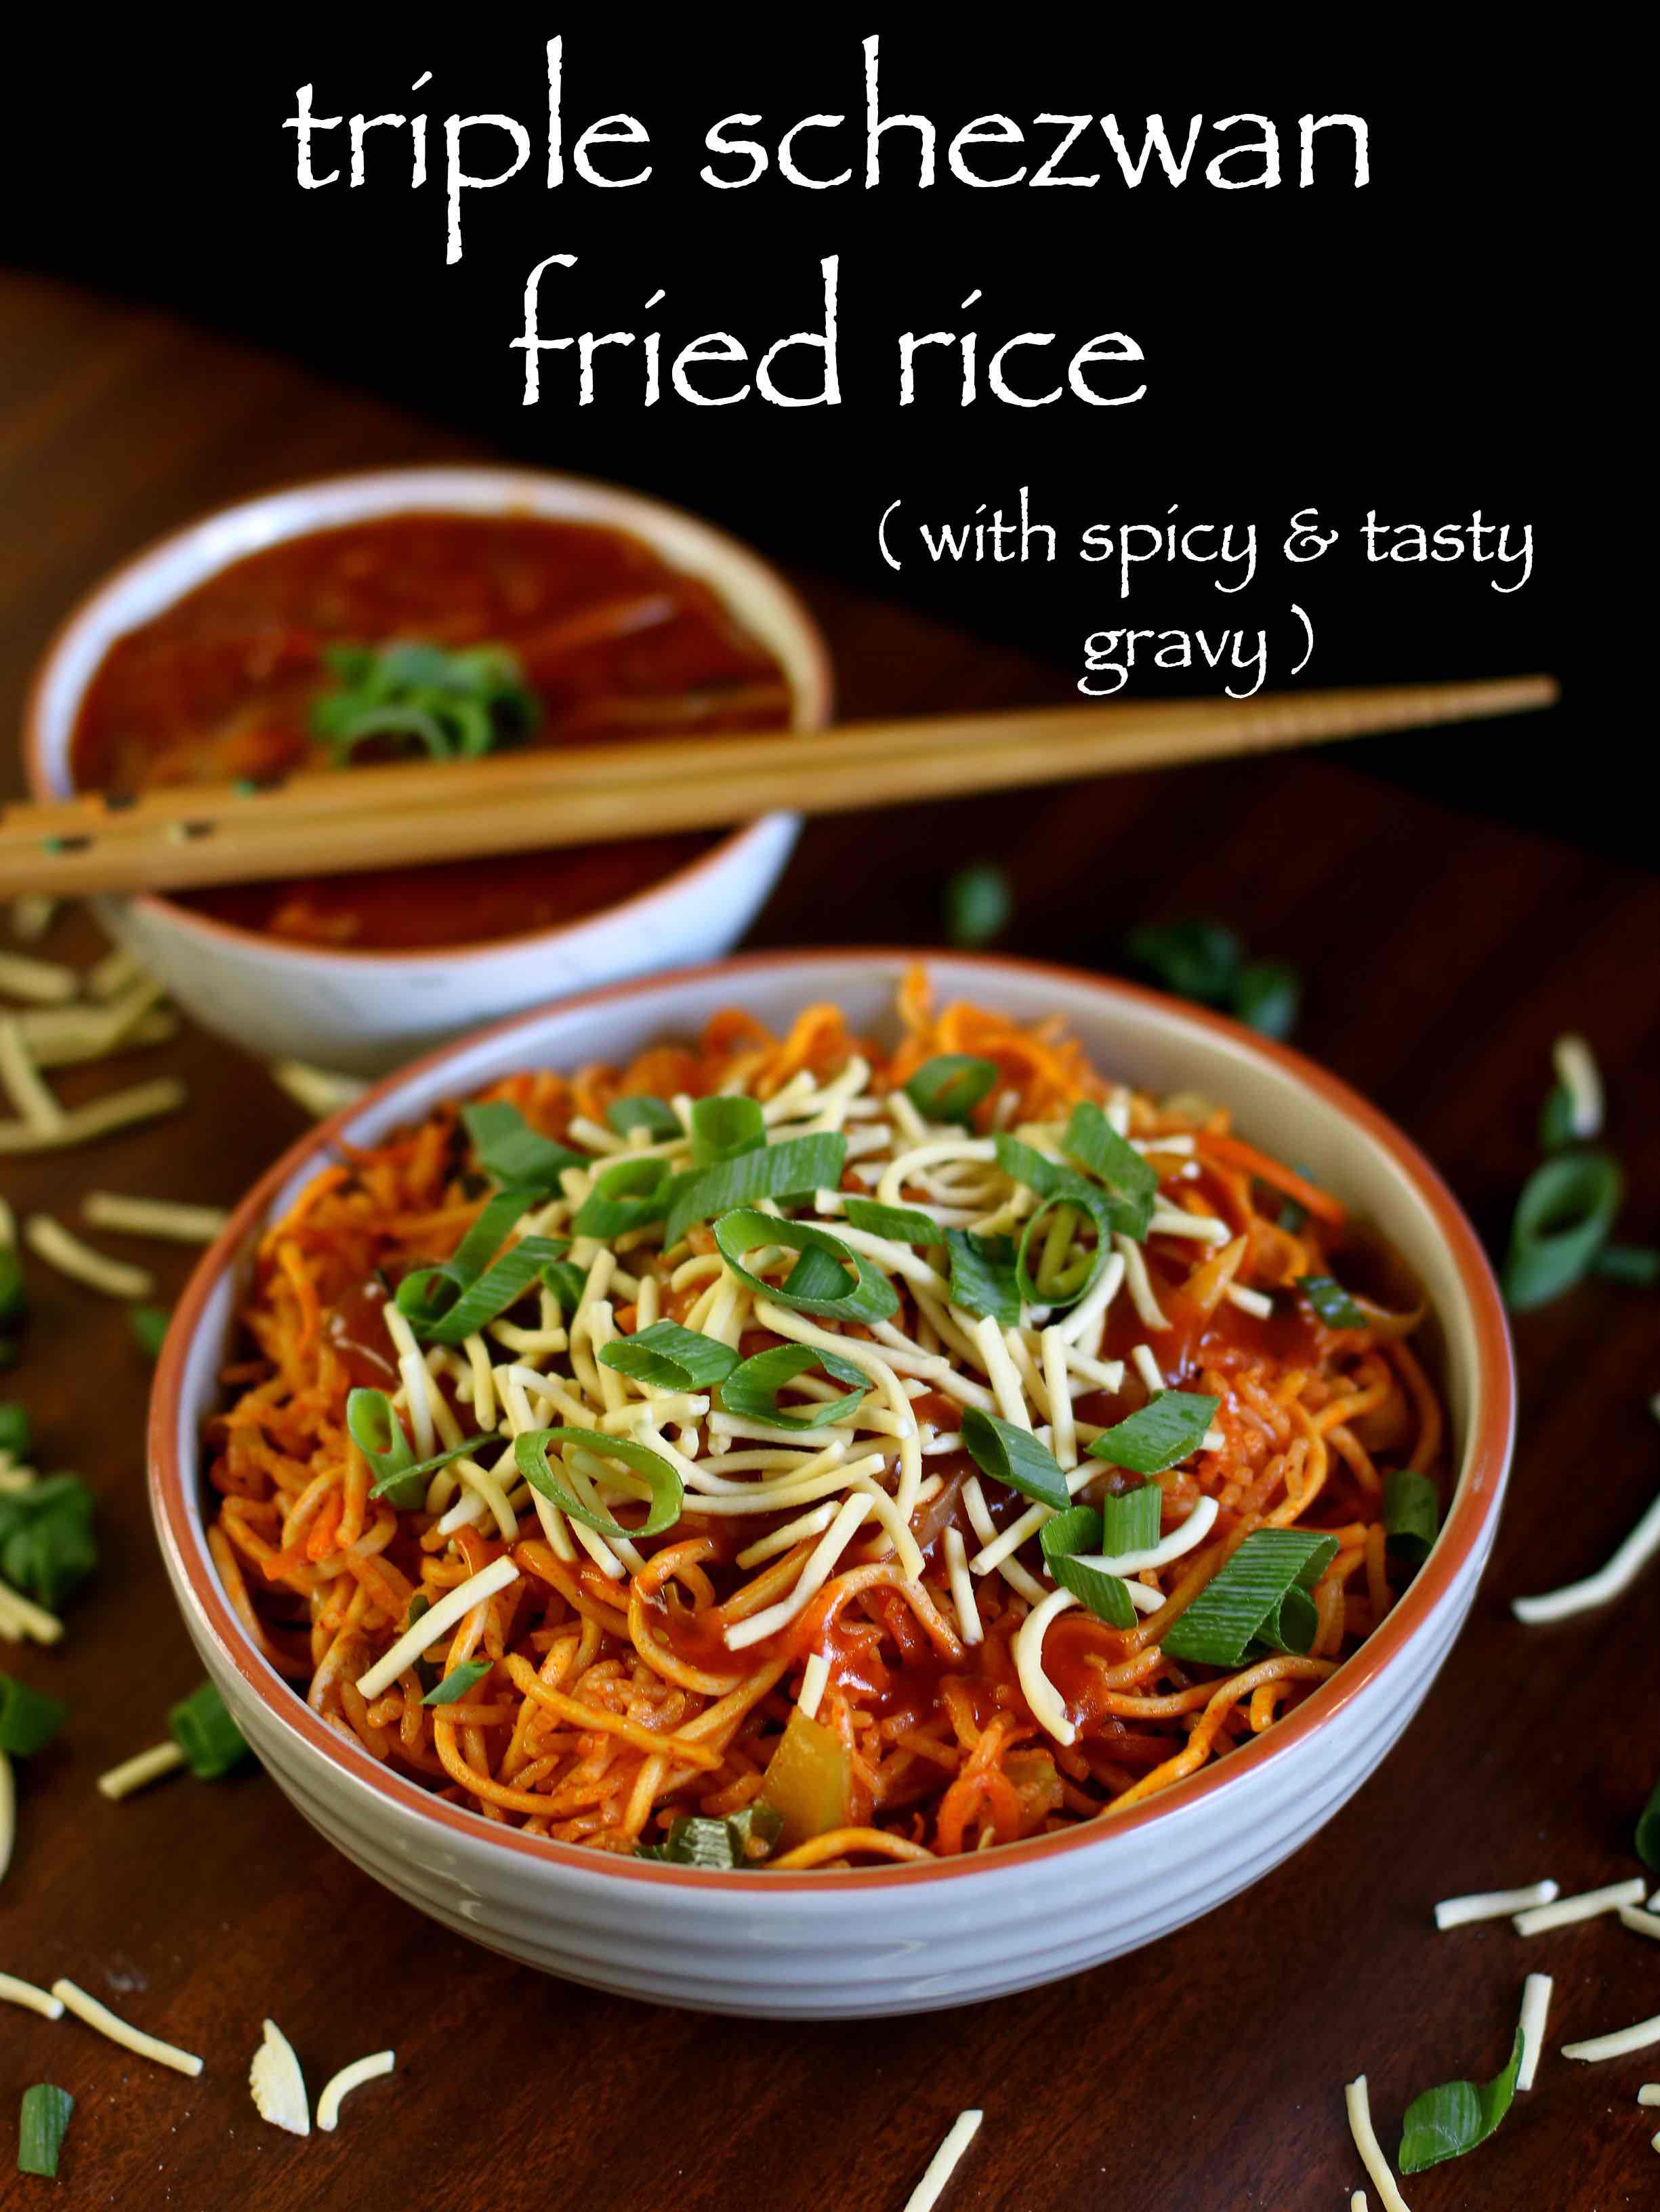 Veg Schezwan Noodles Recipe In Tamil | Sante Blog